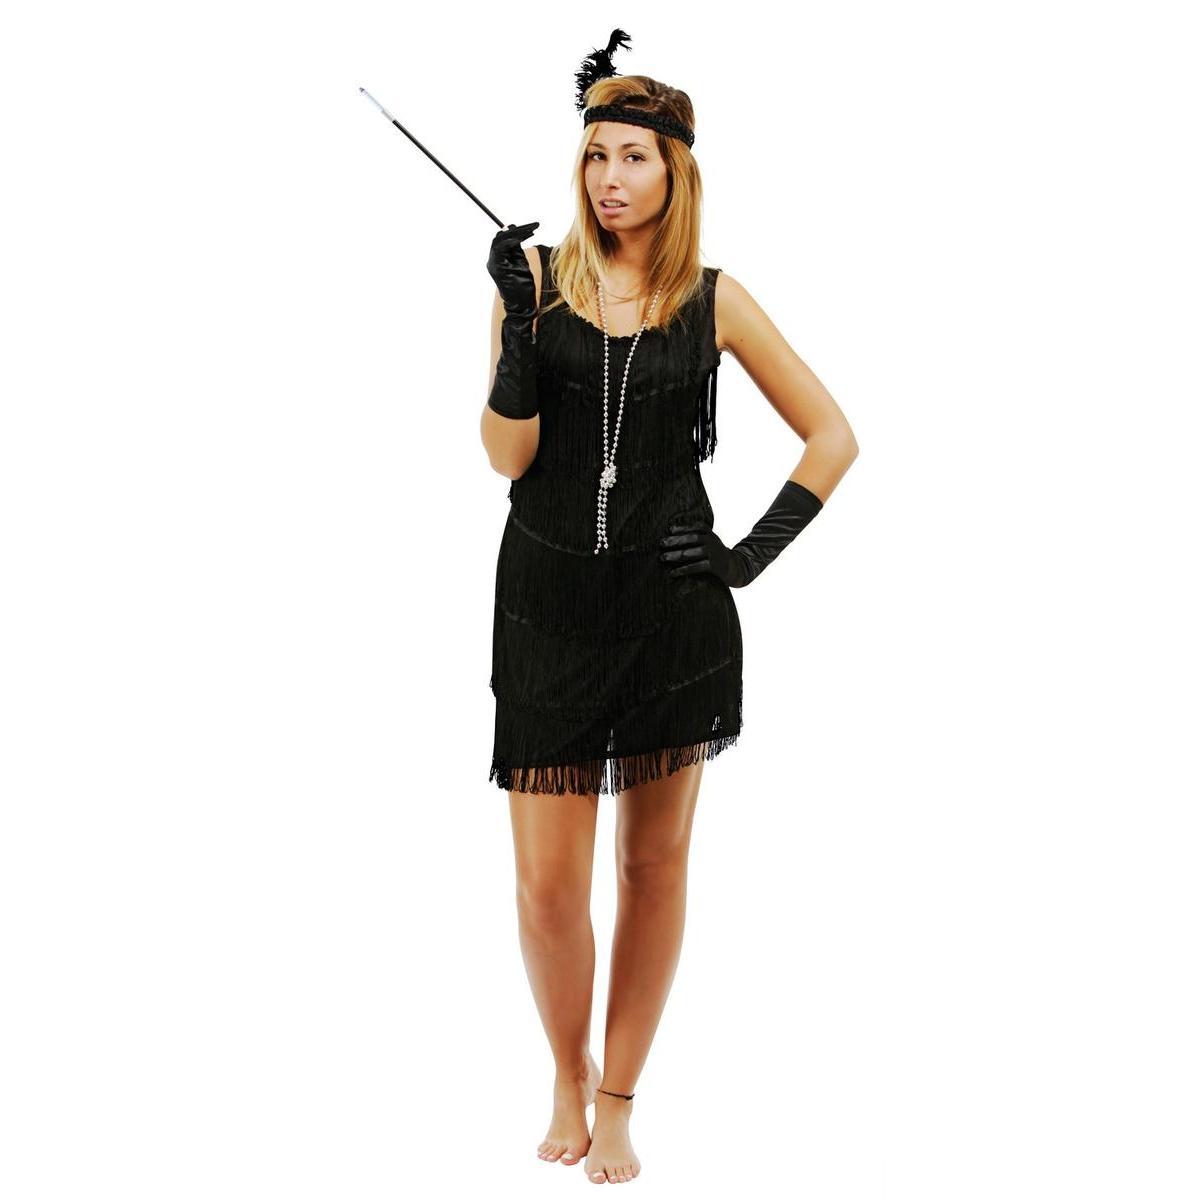 Costume robe Charleston - Taille adulte  - L 48 x H 3 x l 44 cm - Noir - PTIT CLOWN